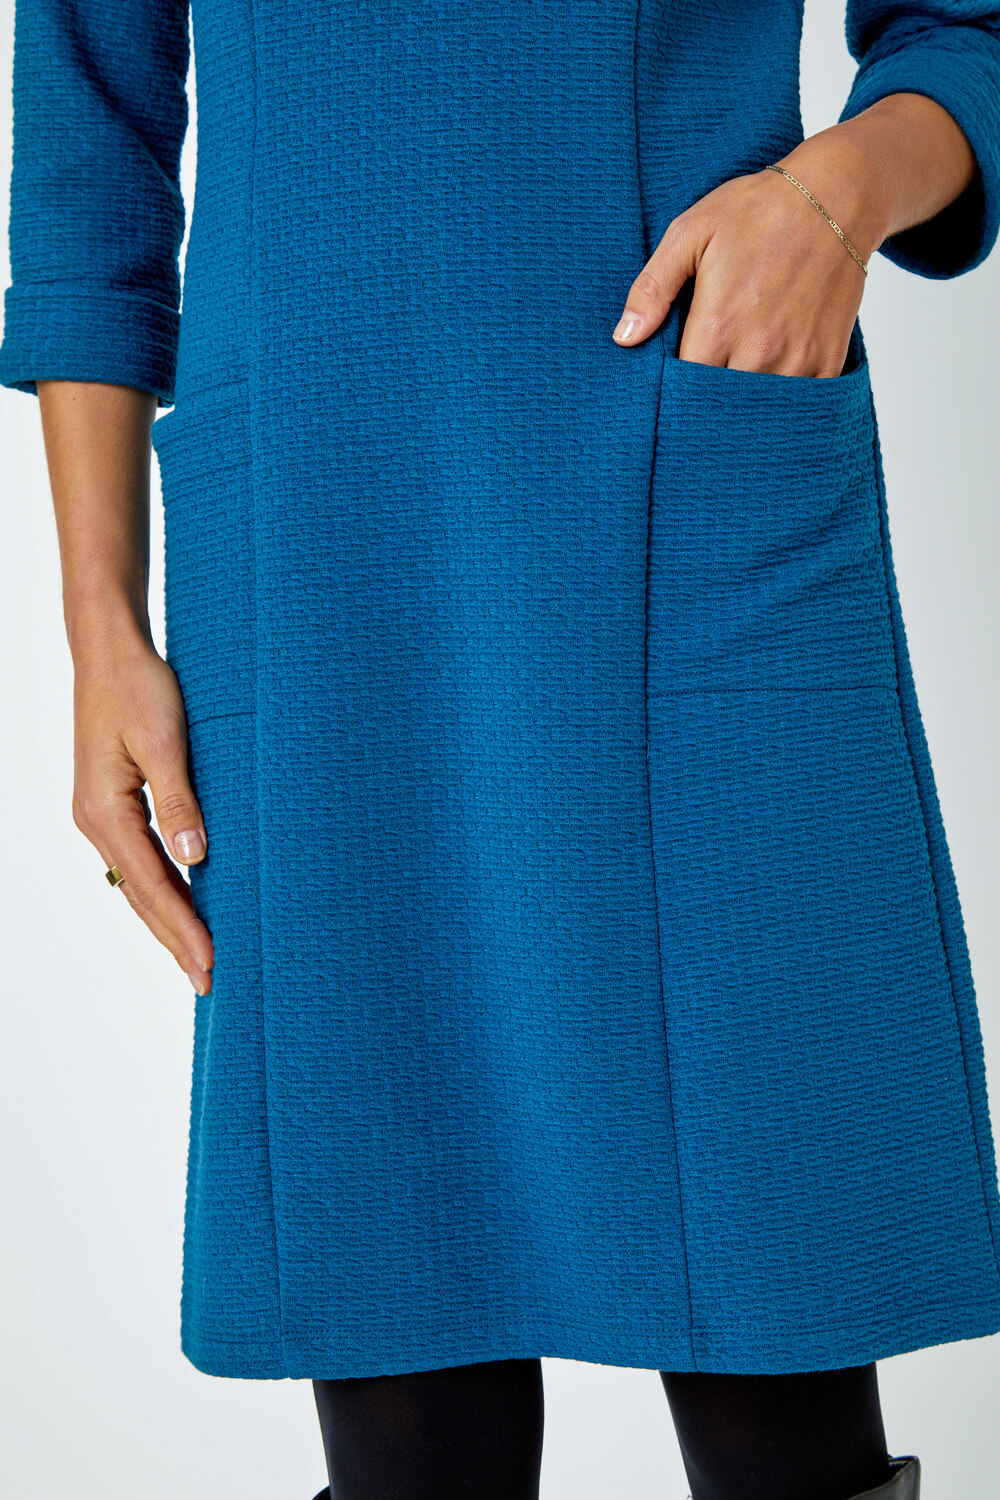 Teal Textured Pocket Cotton Blend Shift Dress, Image 5 of 5